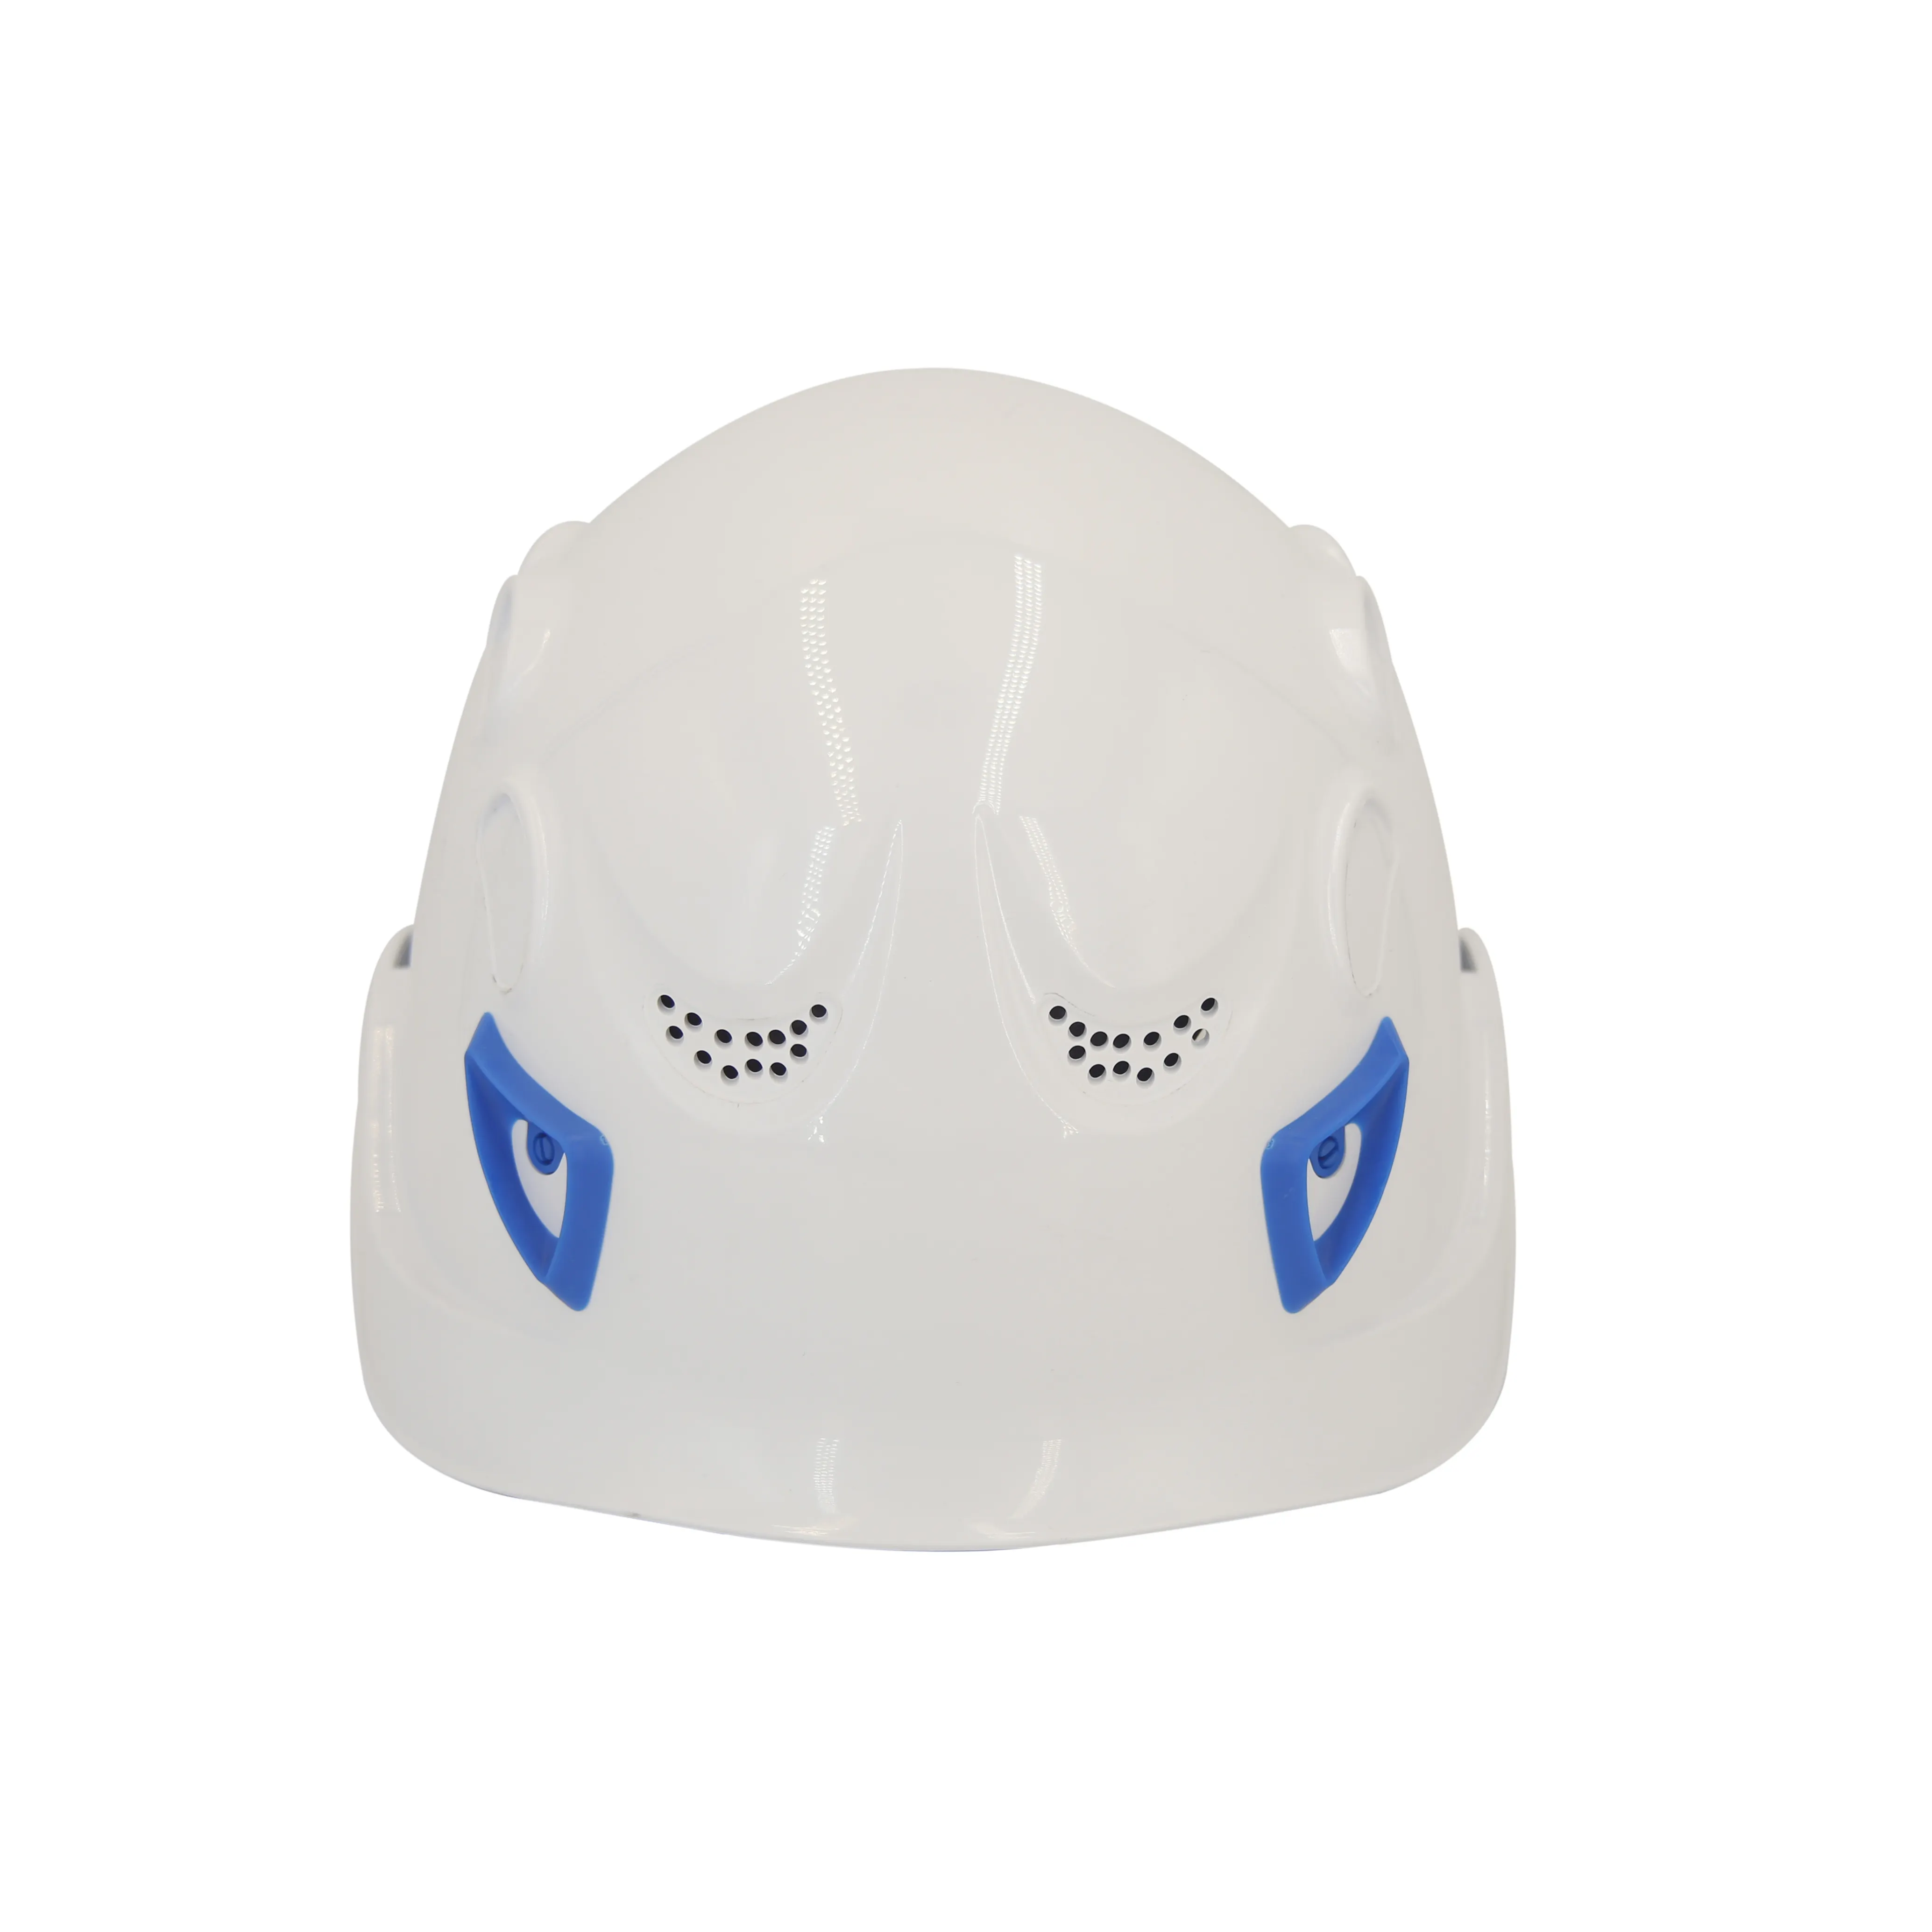 โรงงานโดยตรงกู้ภัยปีนหน้าผาฉนวนไฟฟ้า CE หมวกปีนเขาพร้อมแว่นตานิรภัยหมวกกีฬา